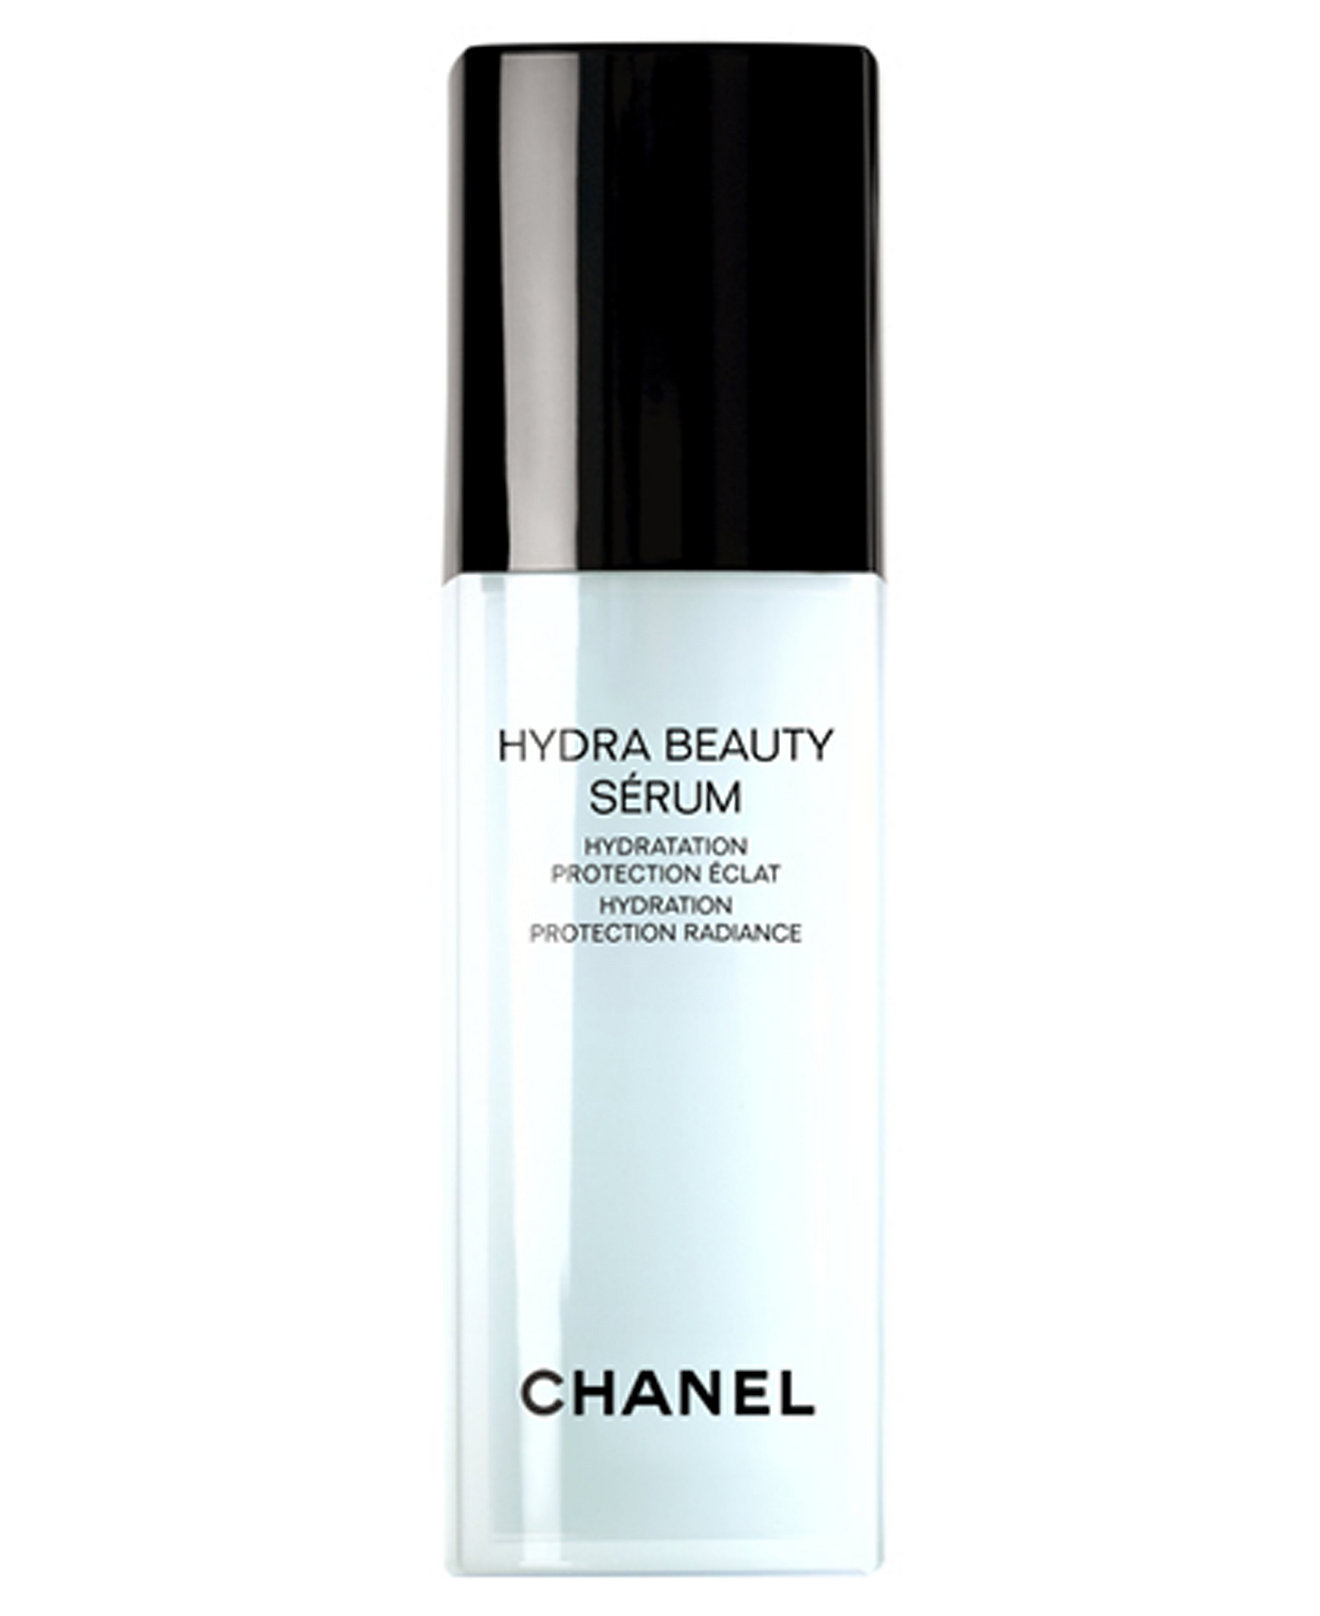 chanel hydra beauty serum